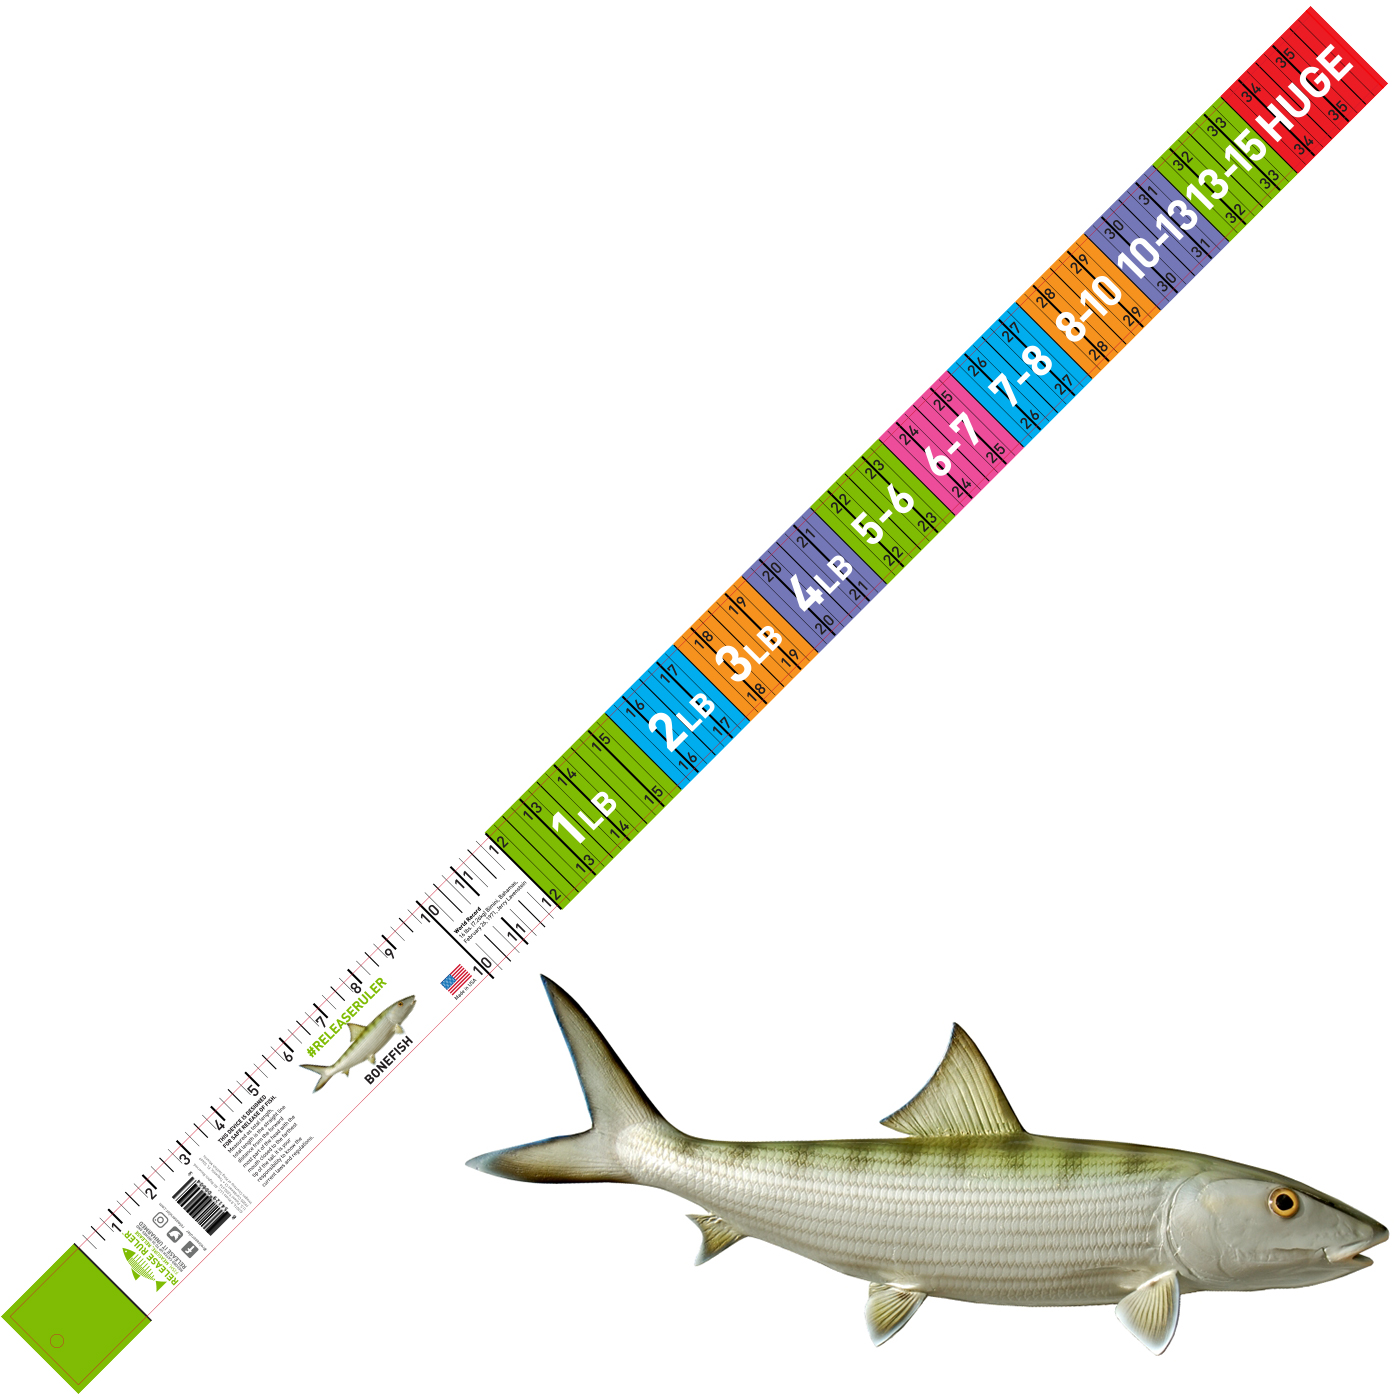 Bonefish Ruler – Release Ruler